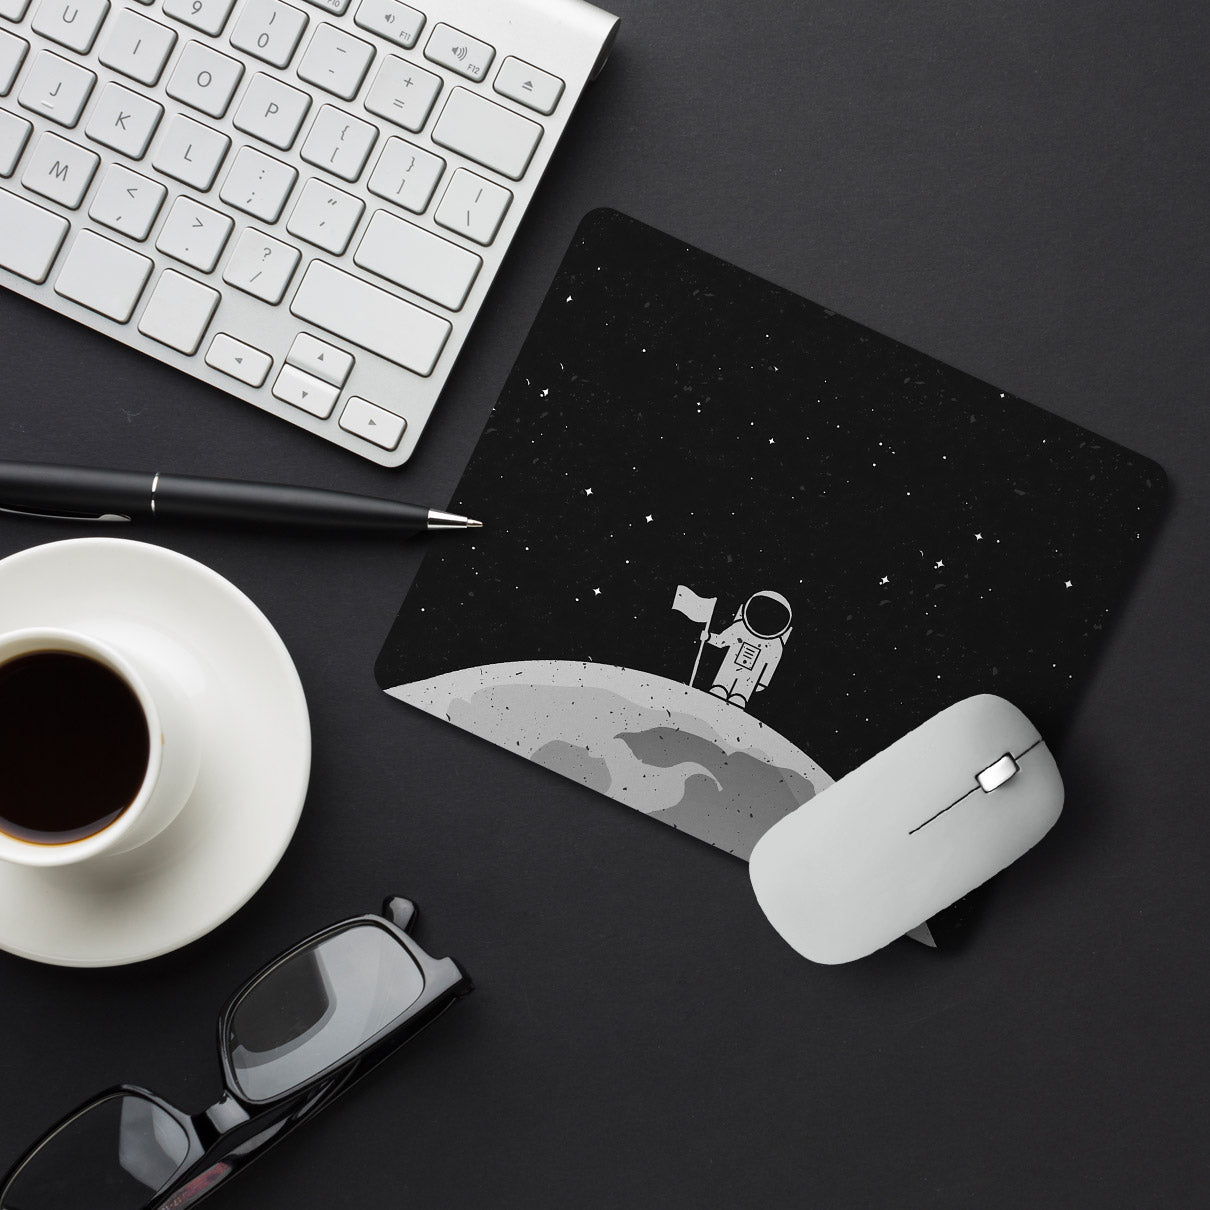 Space Astronaut Designer Printed Premium Mouse pad (9 in x 7.5 in)